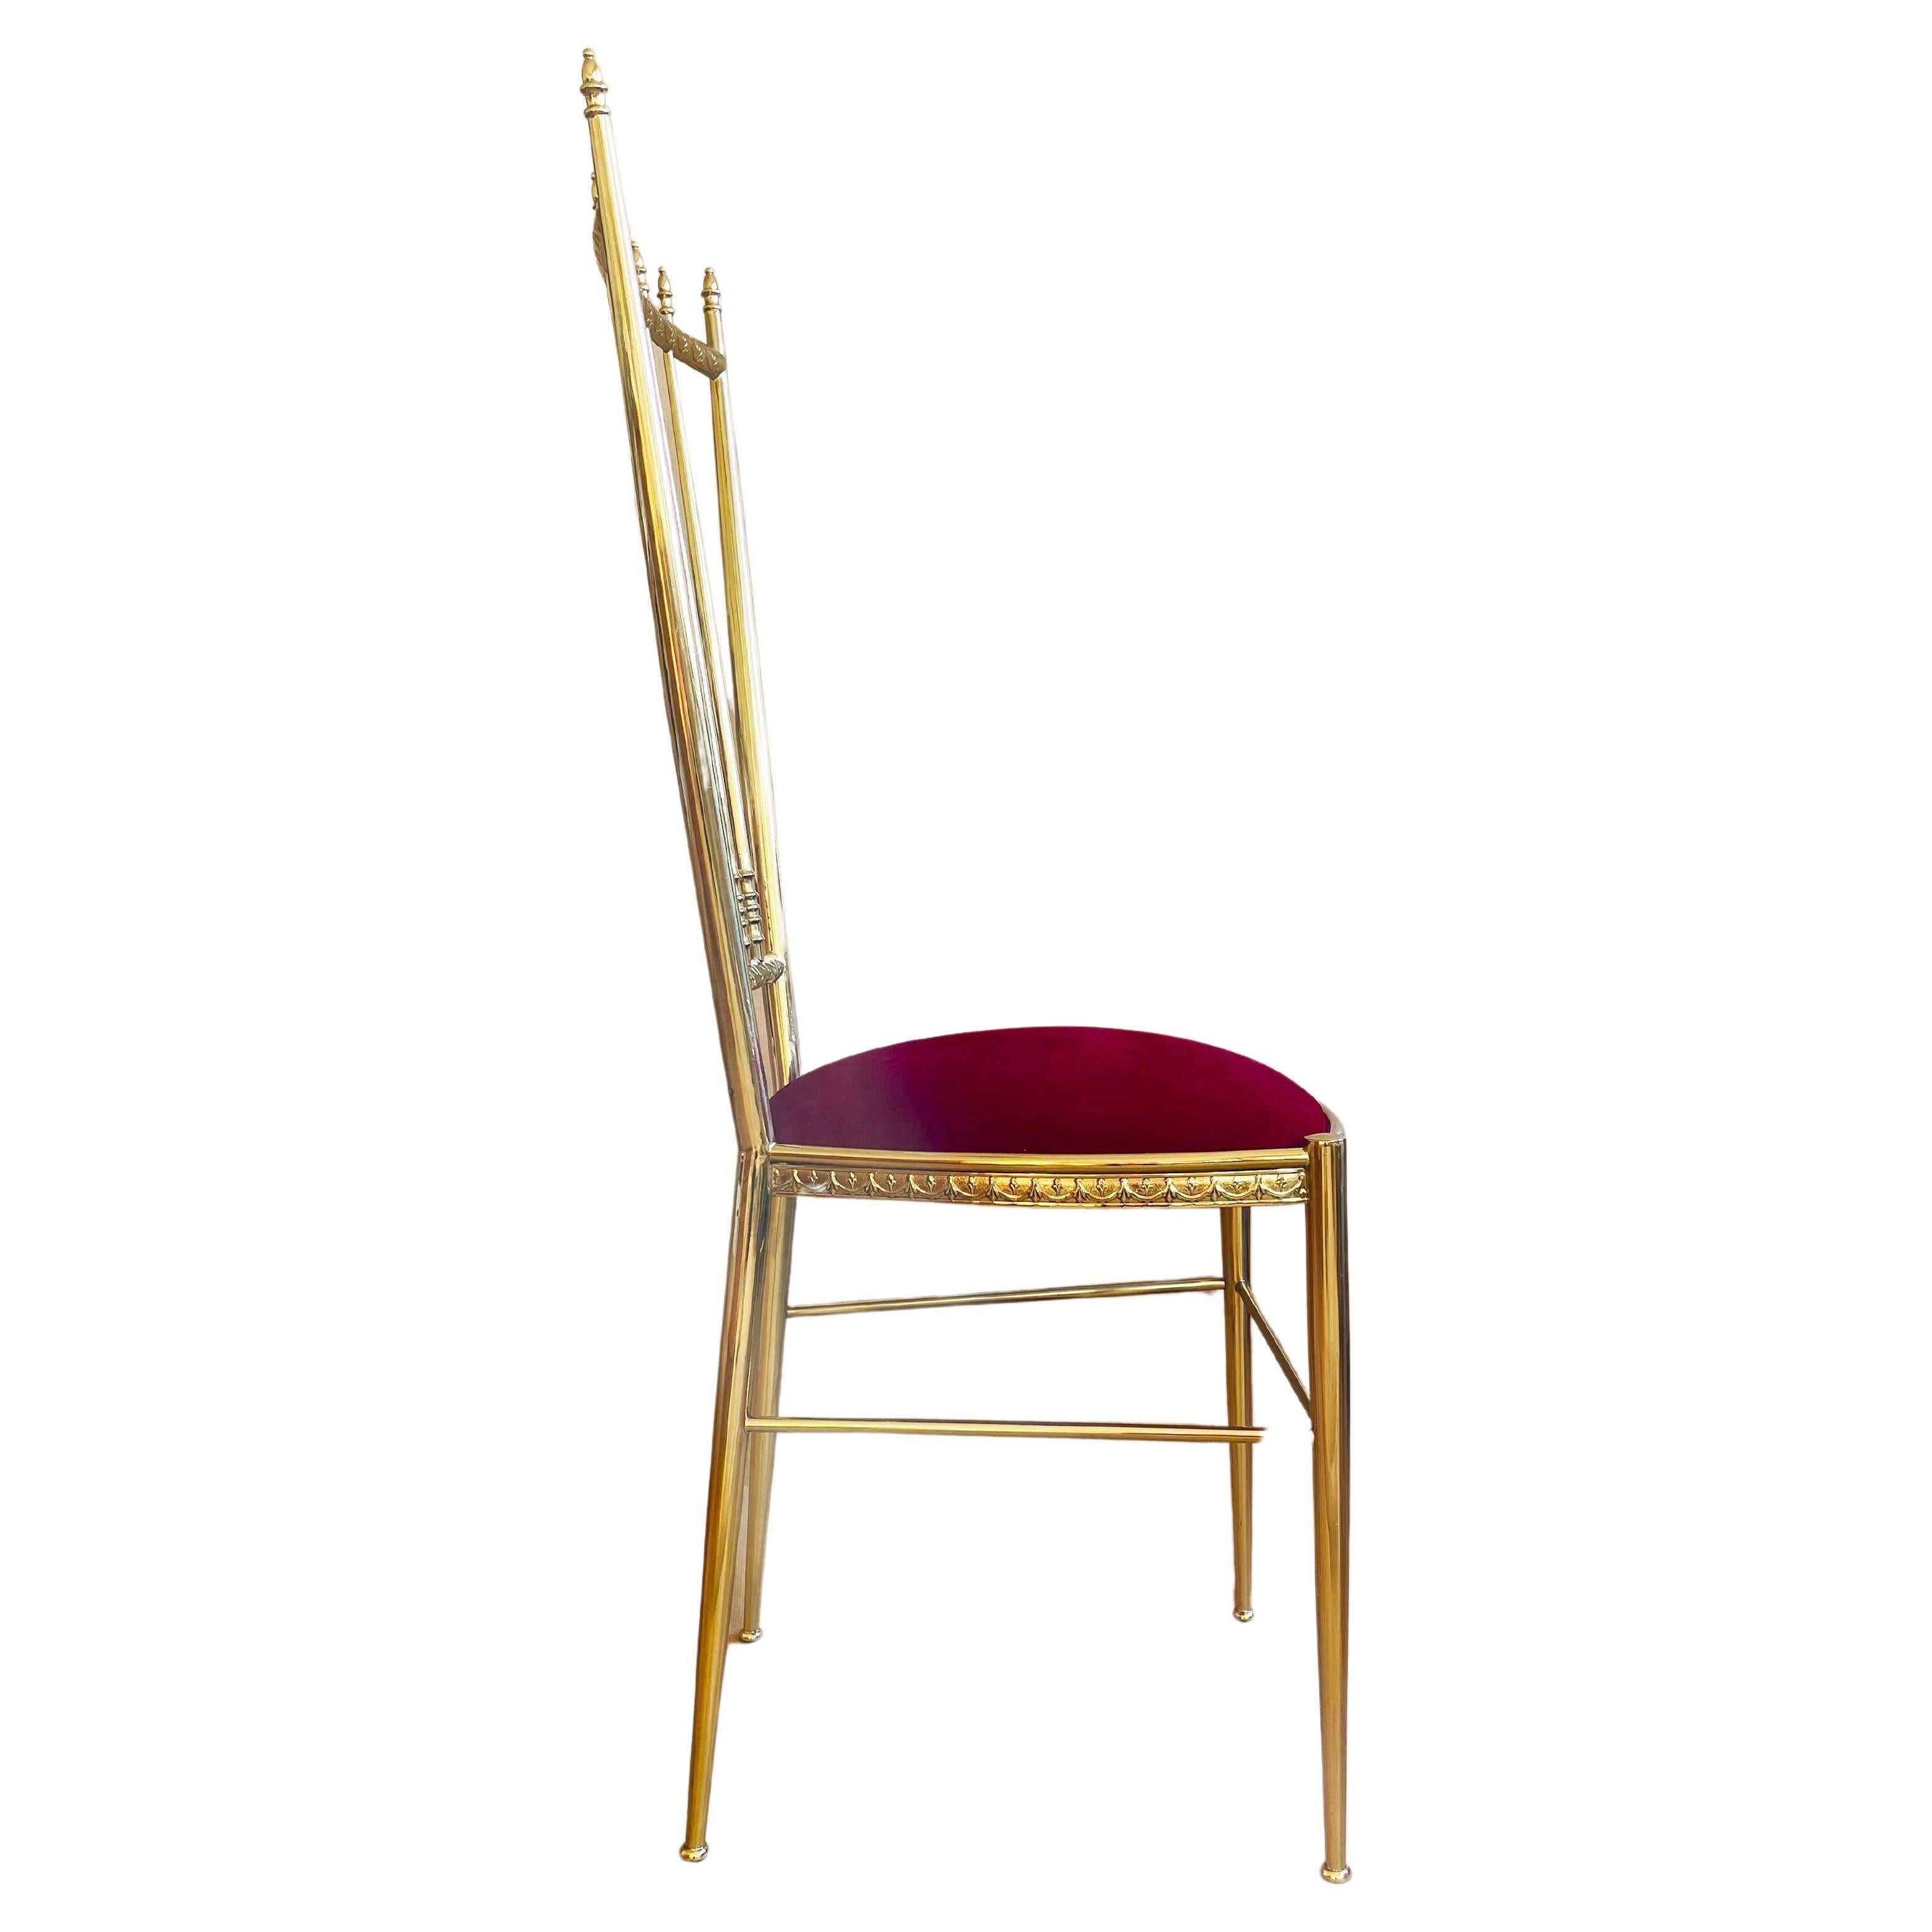 Regency Italian Brass & Red Velvet Chiavari Style Vanity or Side Chair, 1960s Italy For Sale